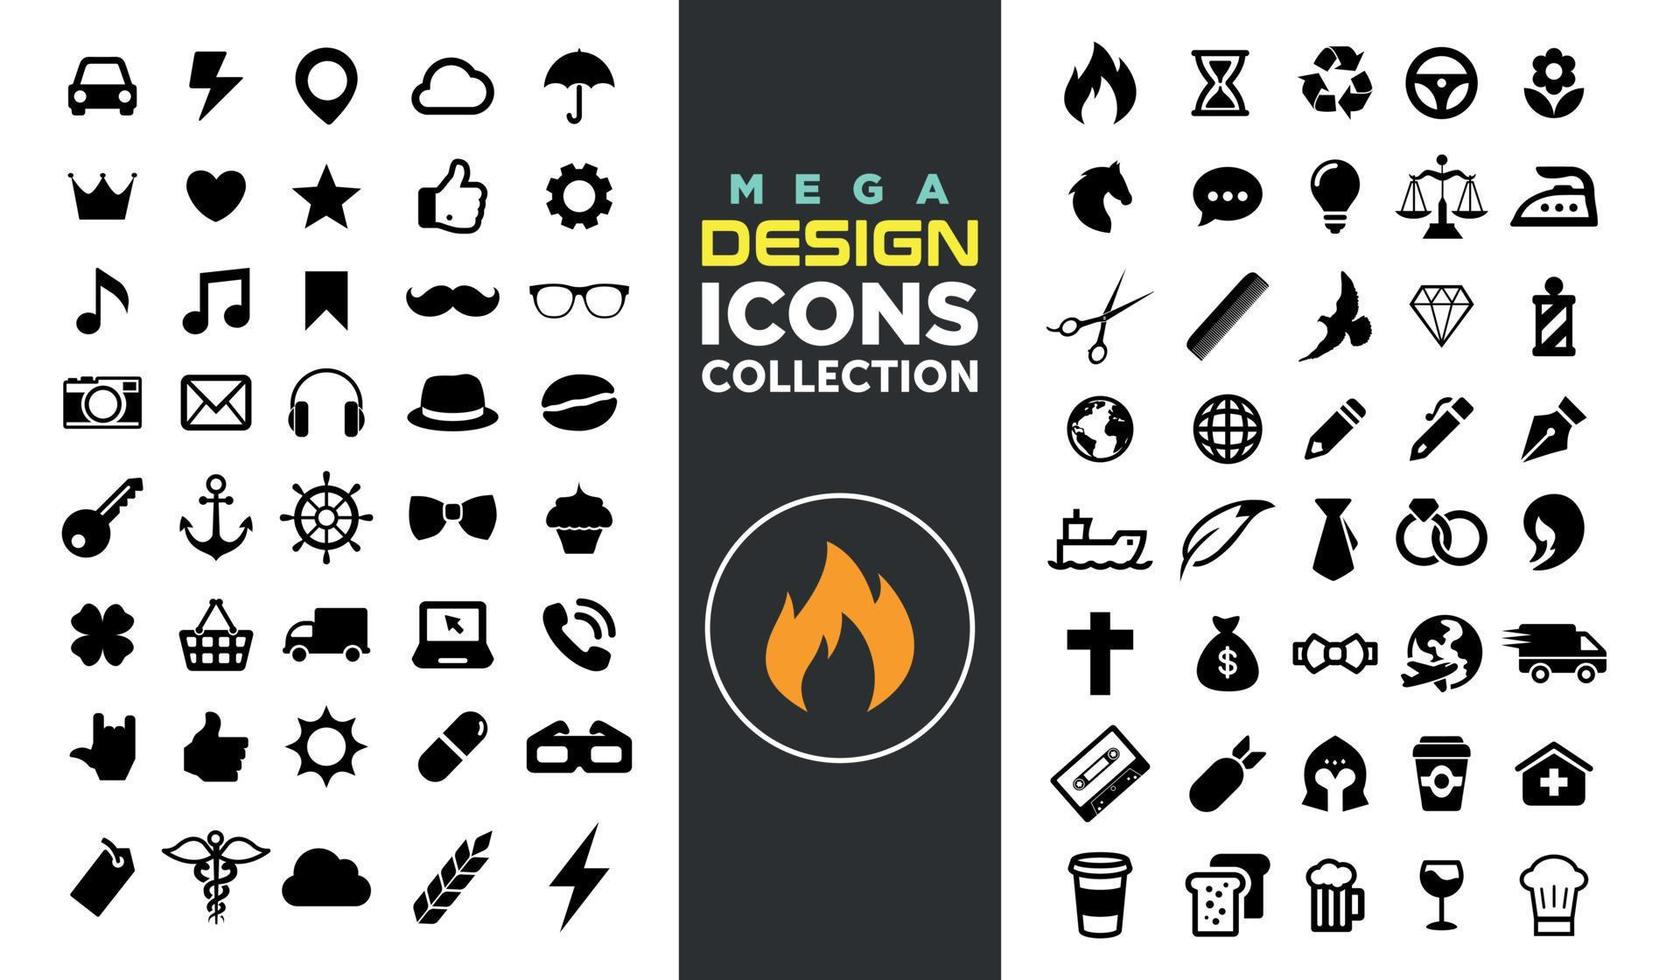 Mega Design Icons Collection vector